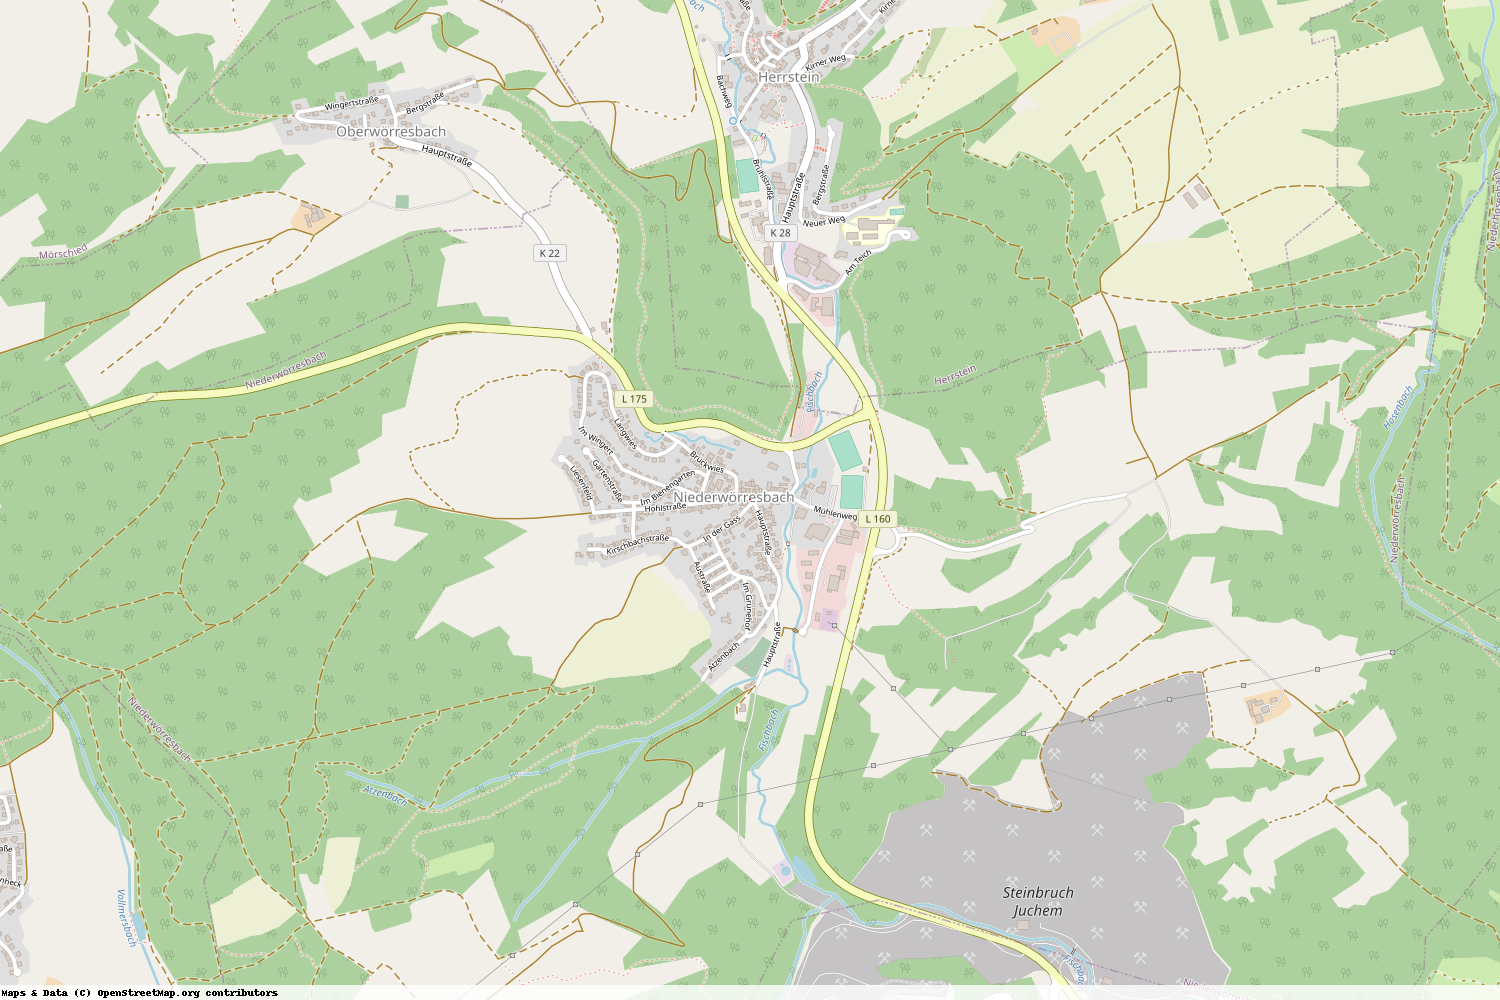 Ist gerade Stromausfall in Rheinland-Pfalz - Birkenfeld - Niederwörresbach?